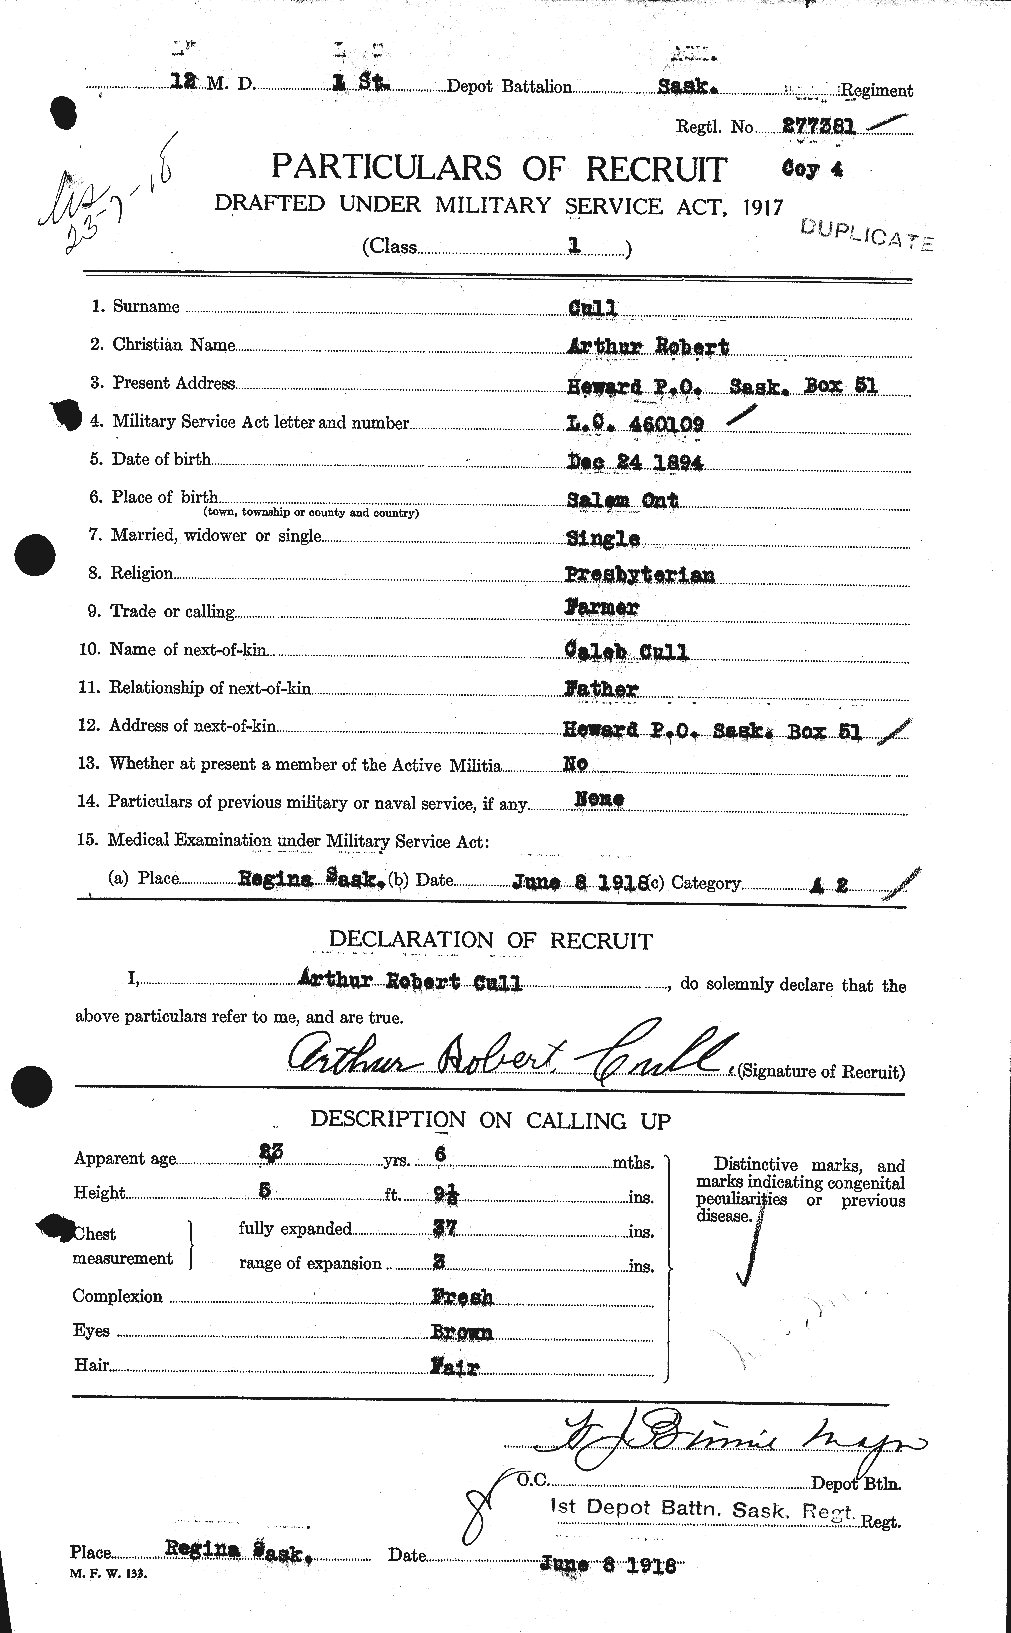 Dossiers du Personnel de la Première Guerre mondiale - CEC 065709a